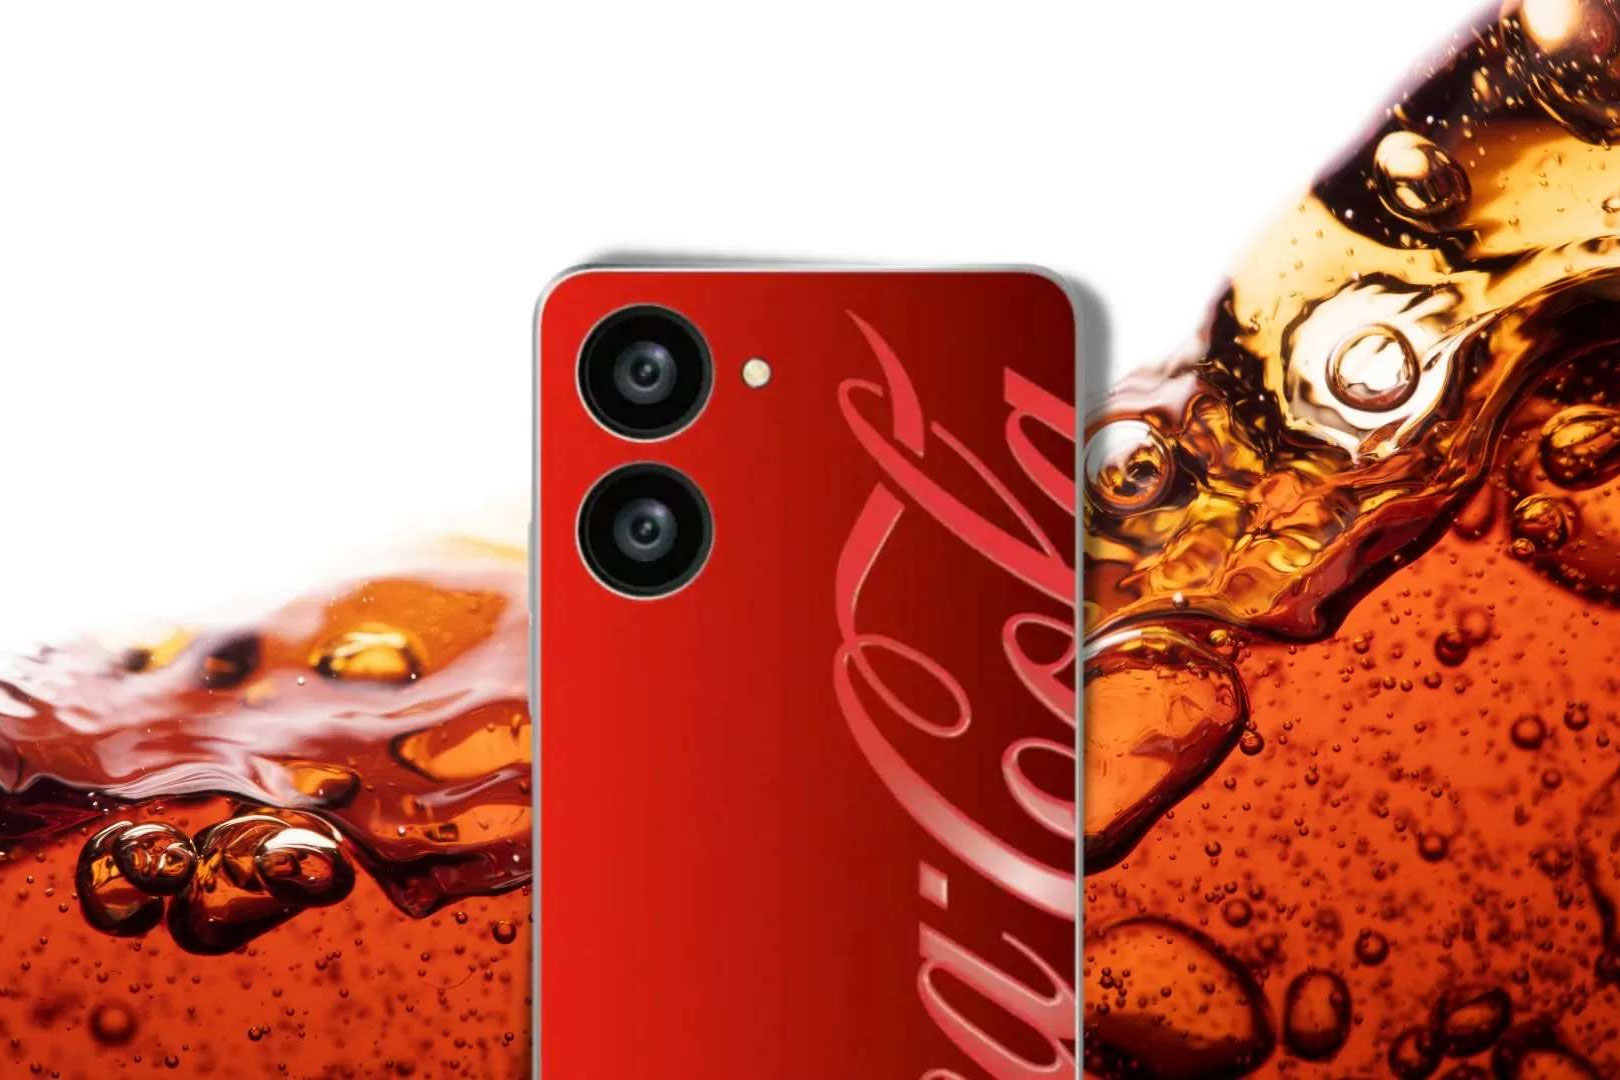 Համացանցում են հայտնվել Coca-Cola-ի սմարթֆոնի առաջին լուսանկարները